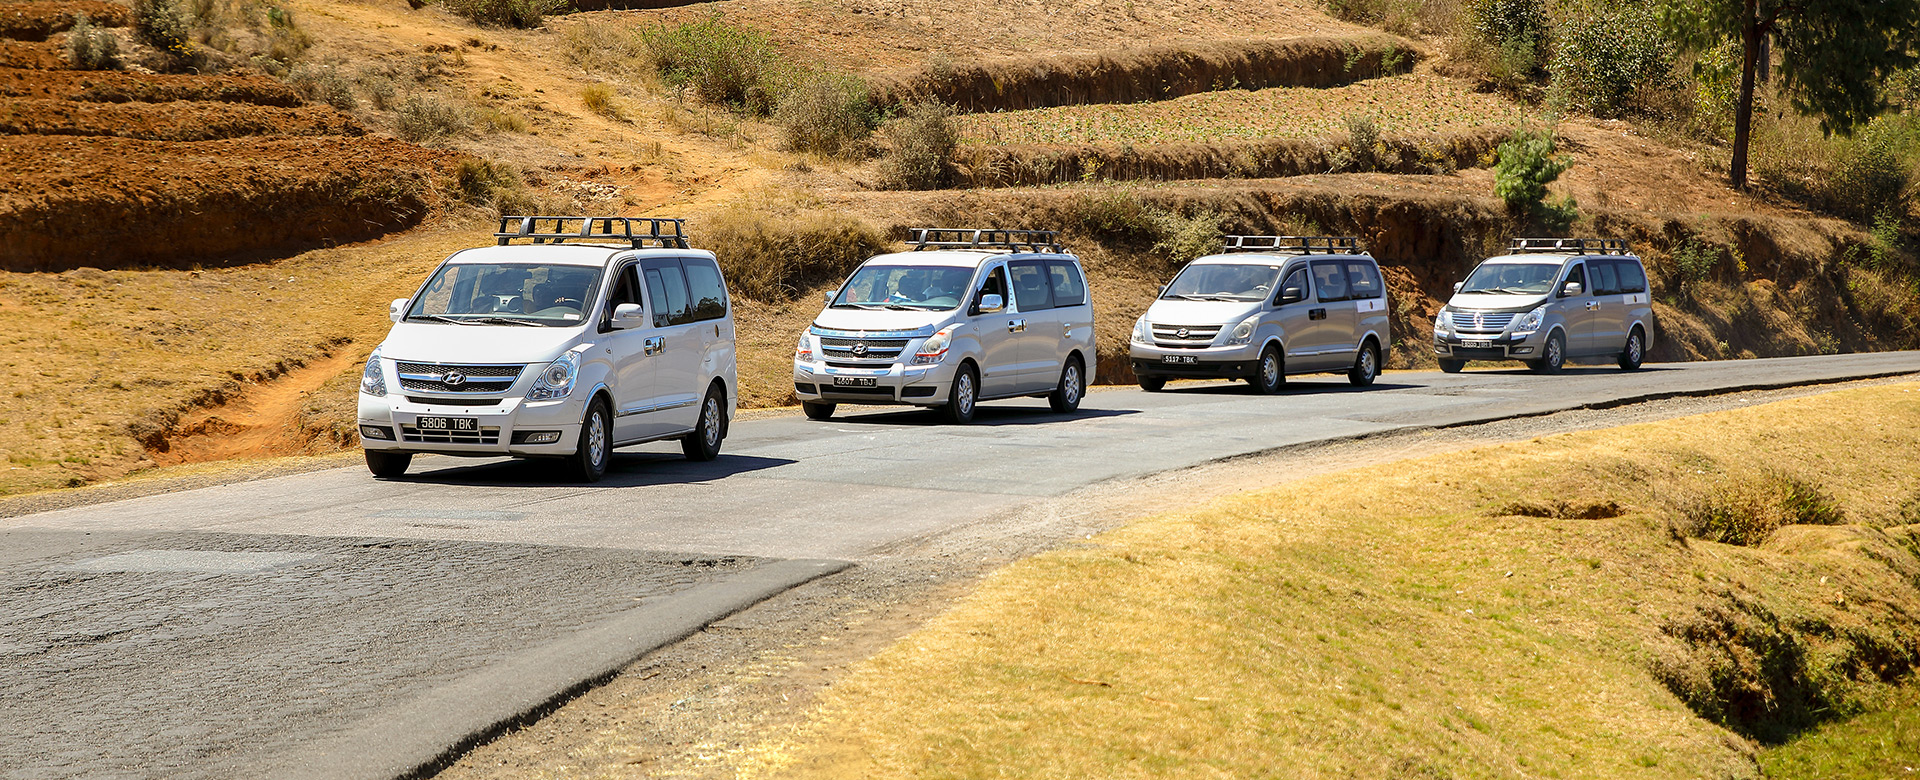 Une nouvelle marque de véhicules lancée à Madagascar